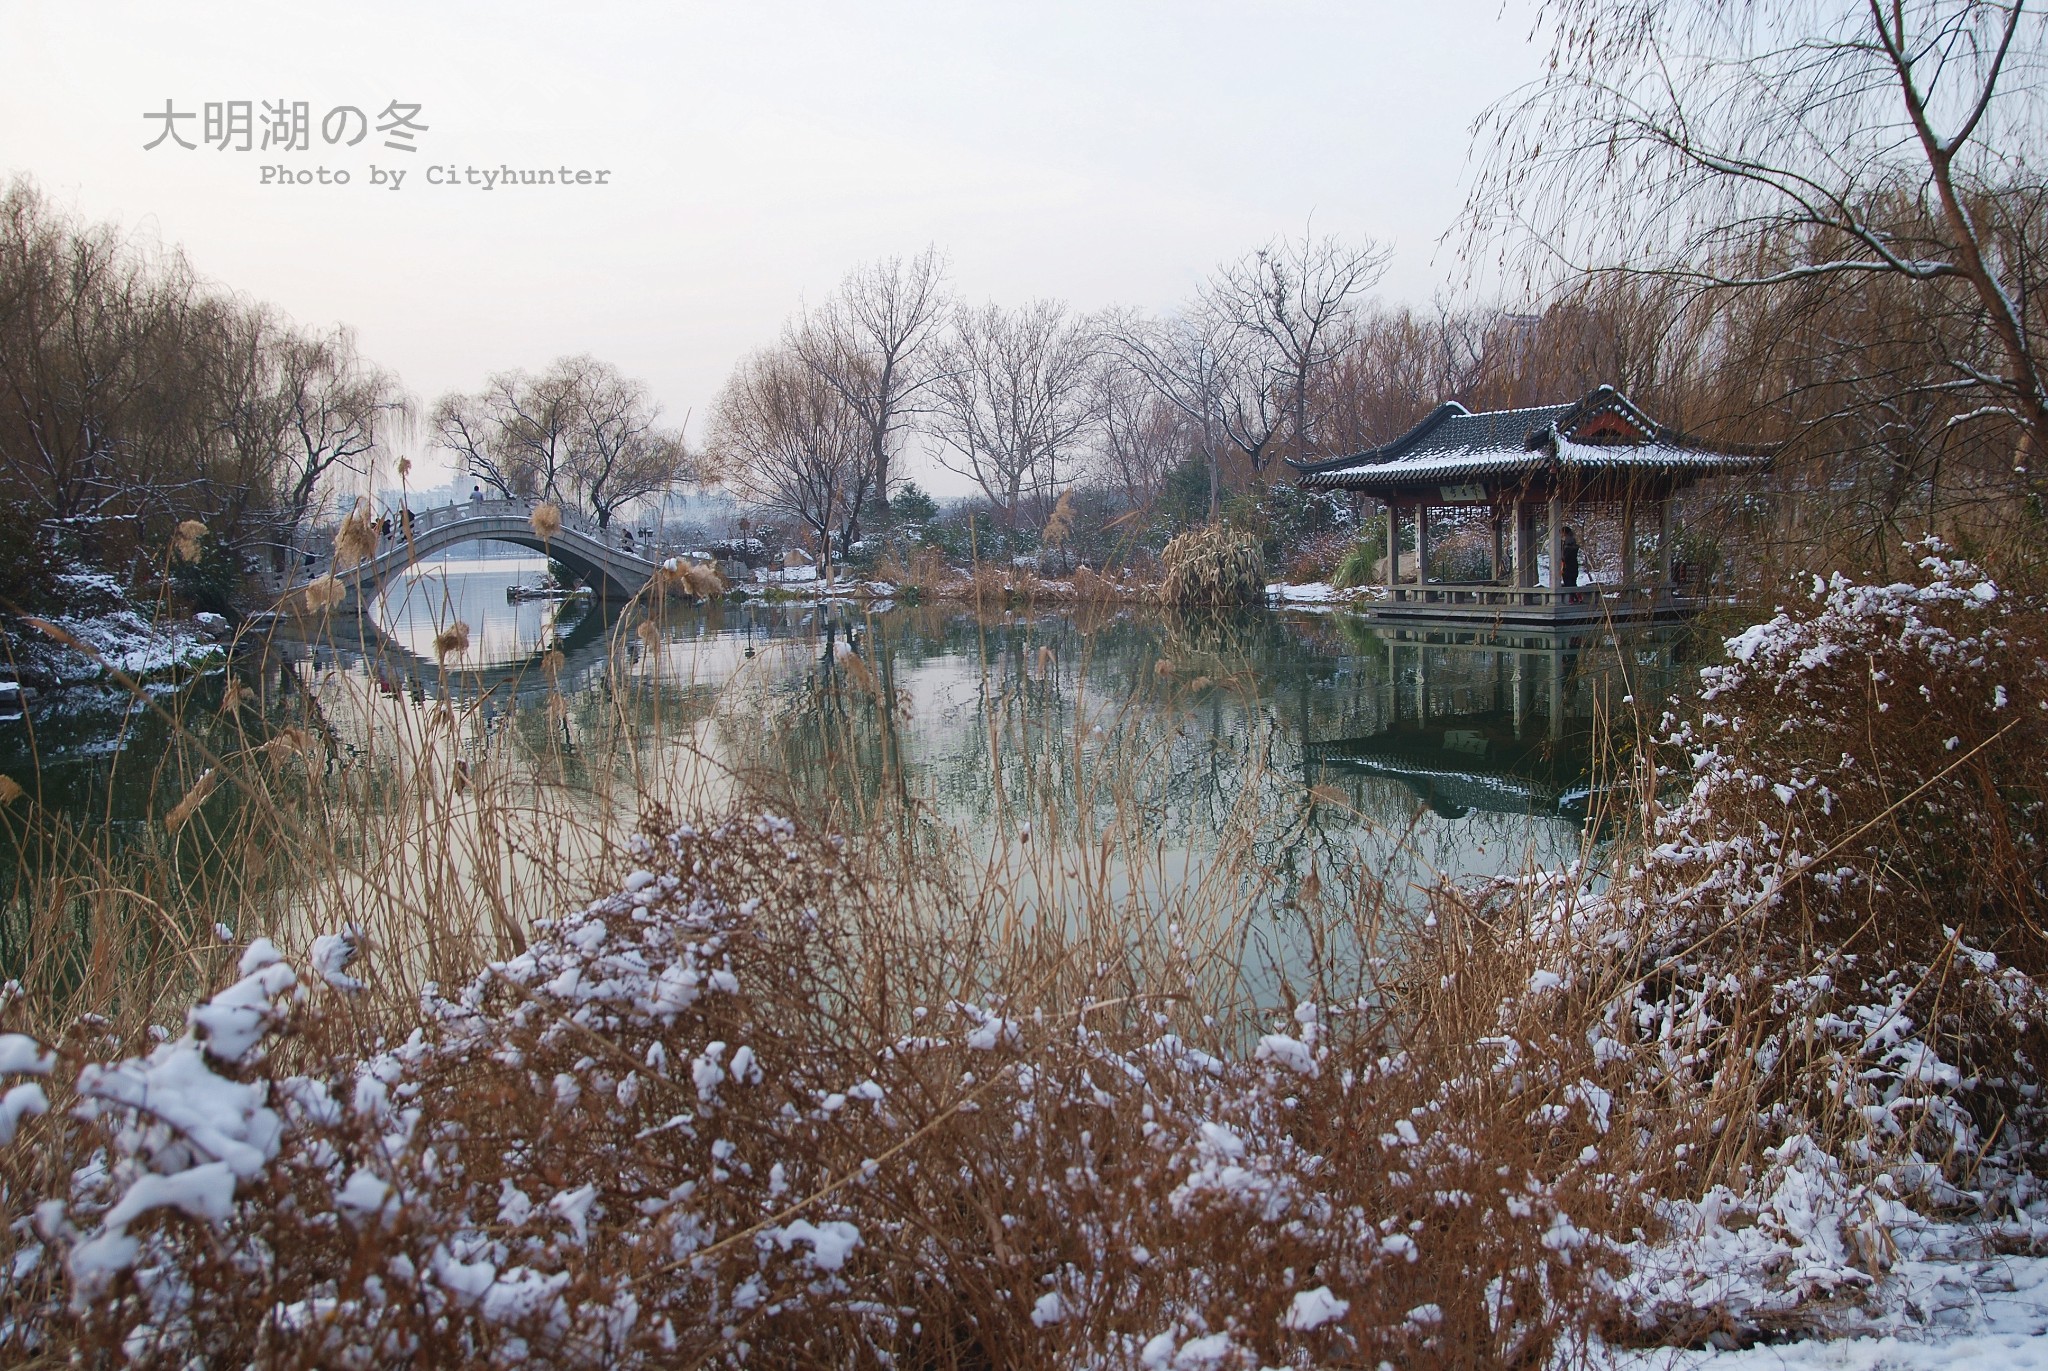 济南的冬天图片35,济南旅游景点,风景名胜 - 马蜂窝